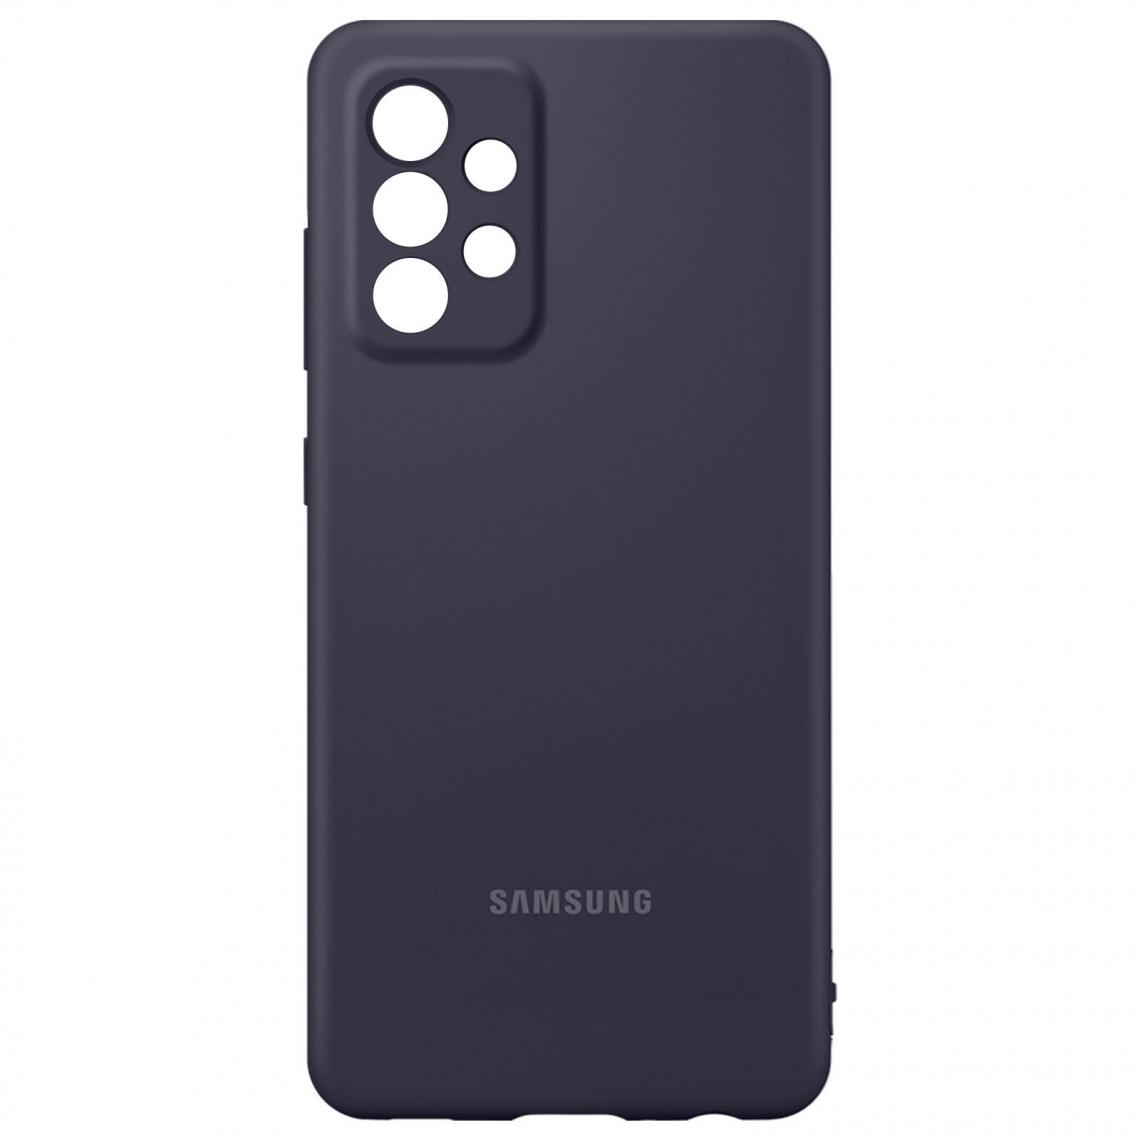 Samsung - Coque Samsung Galaxy A52 Soft Touch Silicone Cover Original noir - Coque, étui smartphone